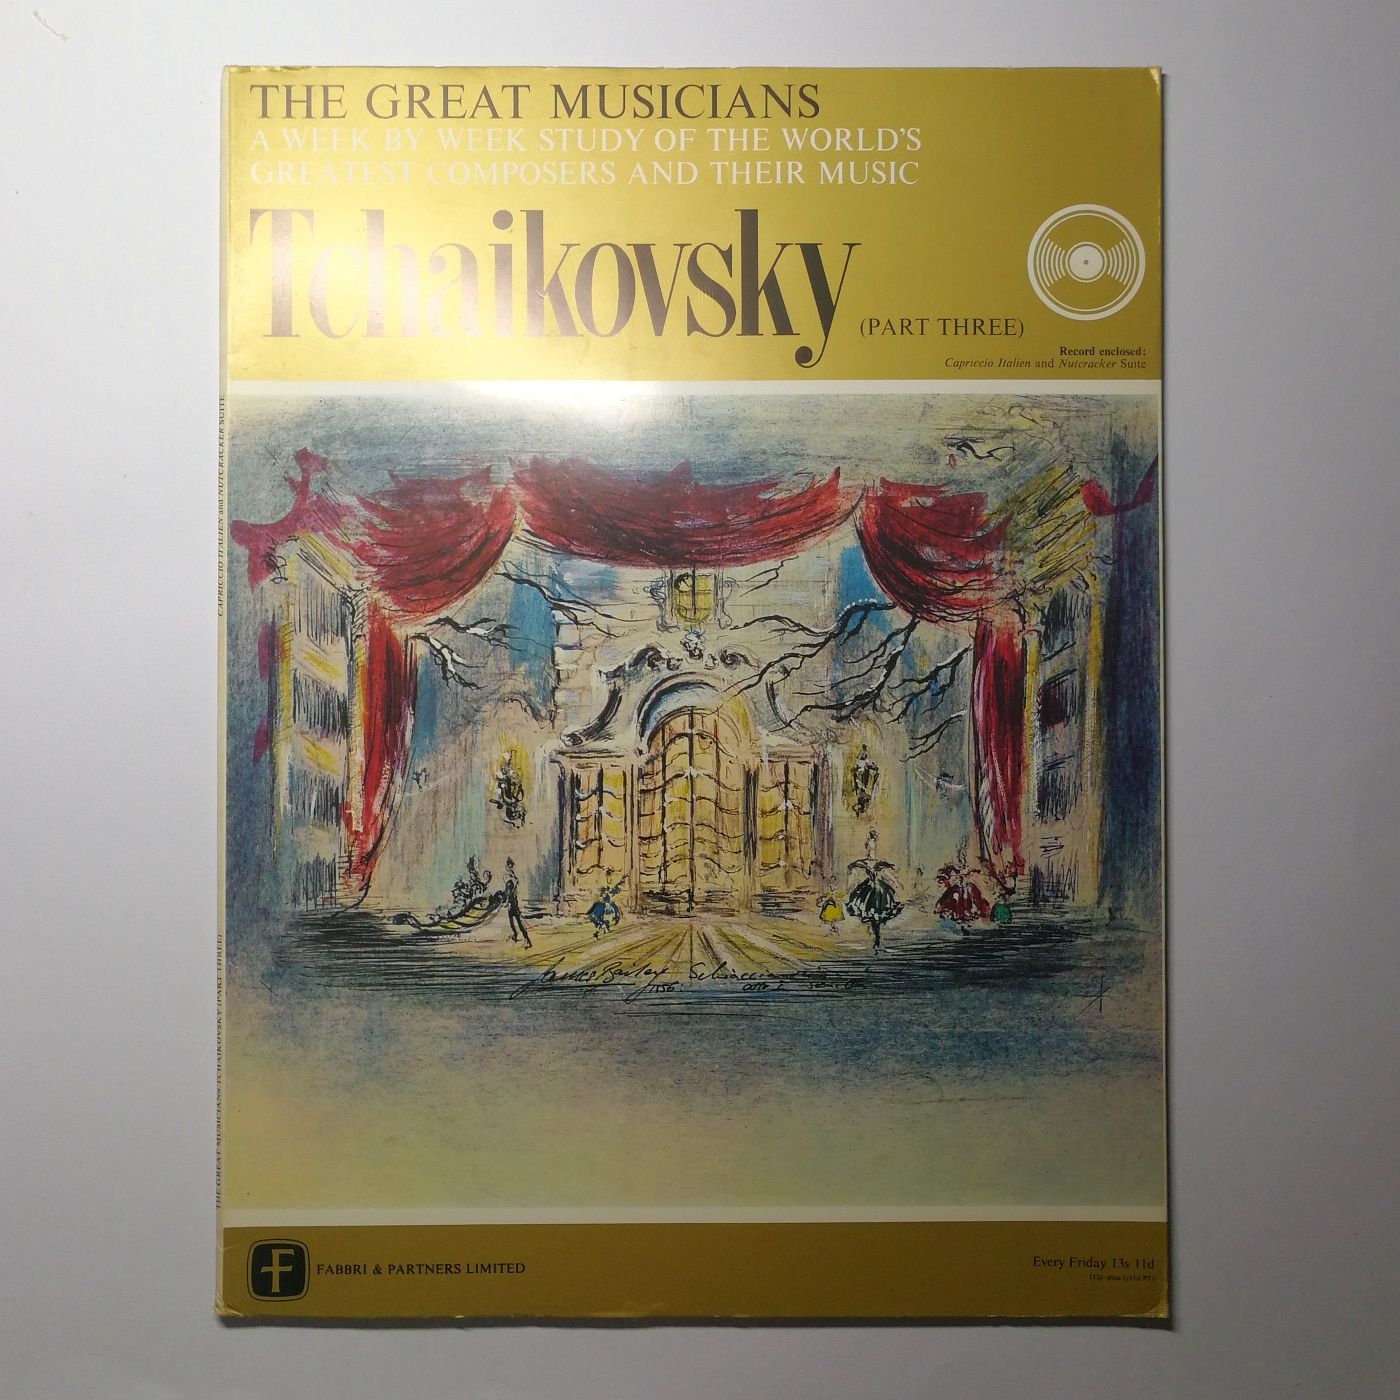 Discos de Vinil | The Great Musicians - Tchaikovsky (pt. 1 - 5)